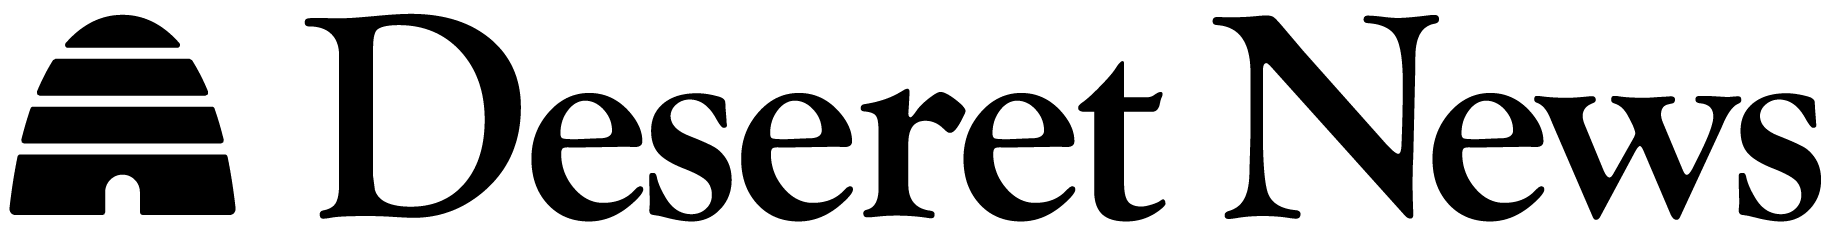 deseret-news-full-logo-black